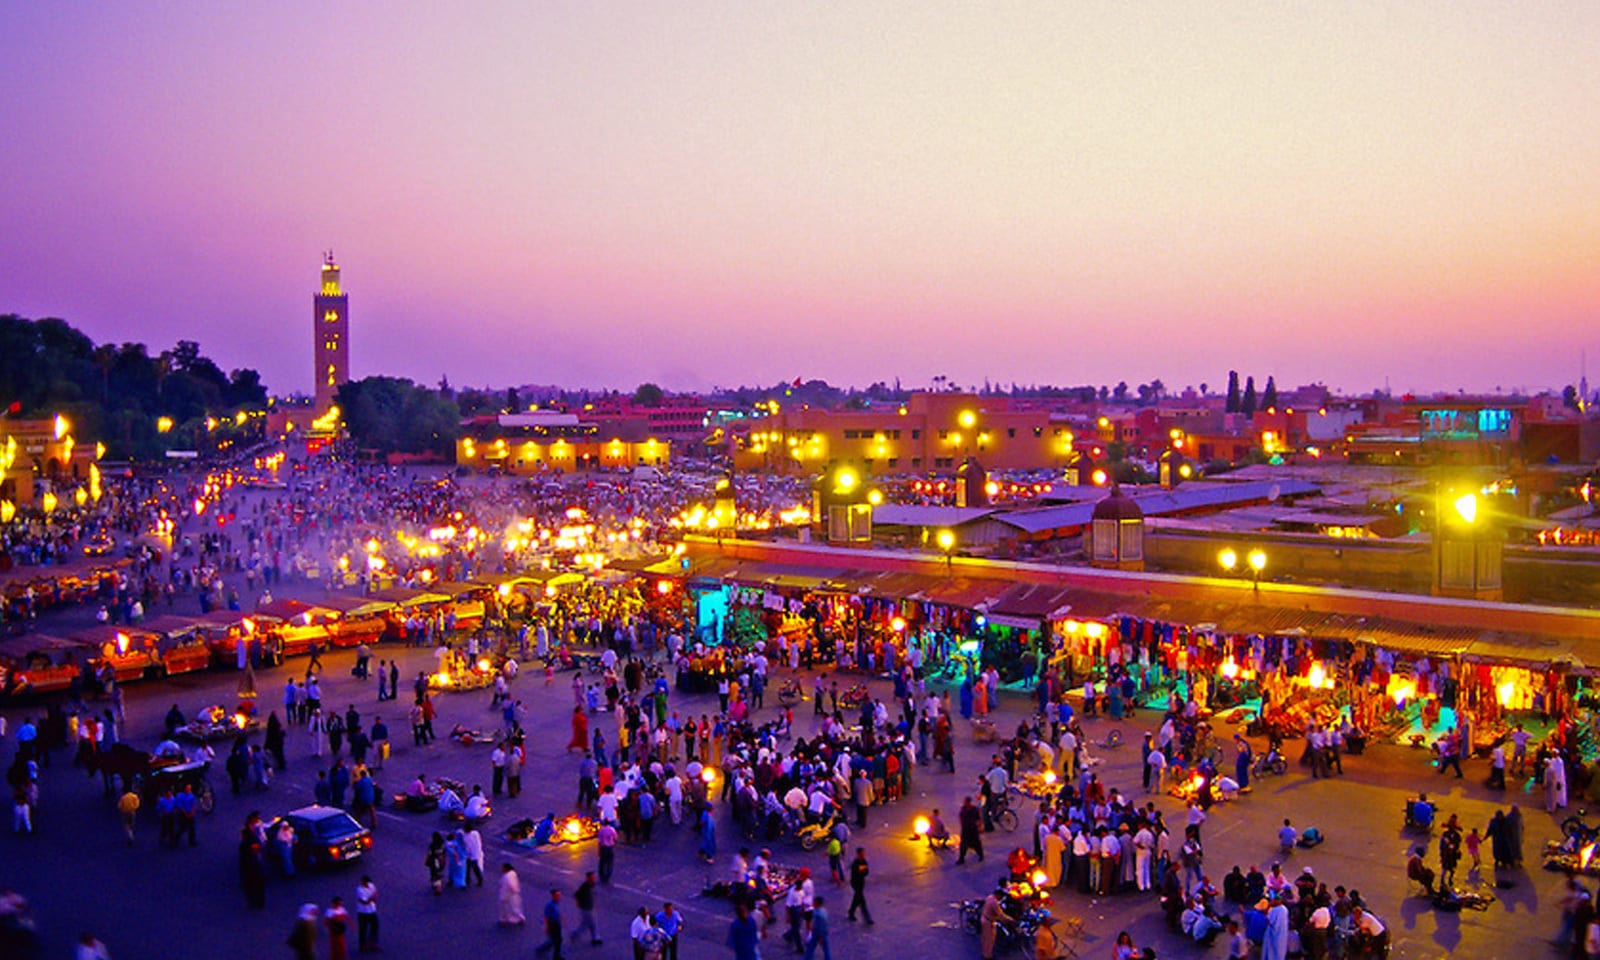 السياحة في المغرب في ظل جائحة كورونا باتت ممكنة بعد السماح للسياح